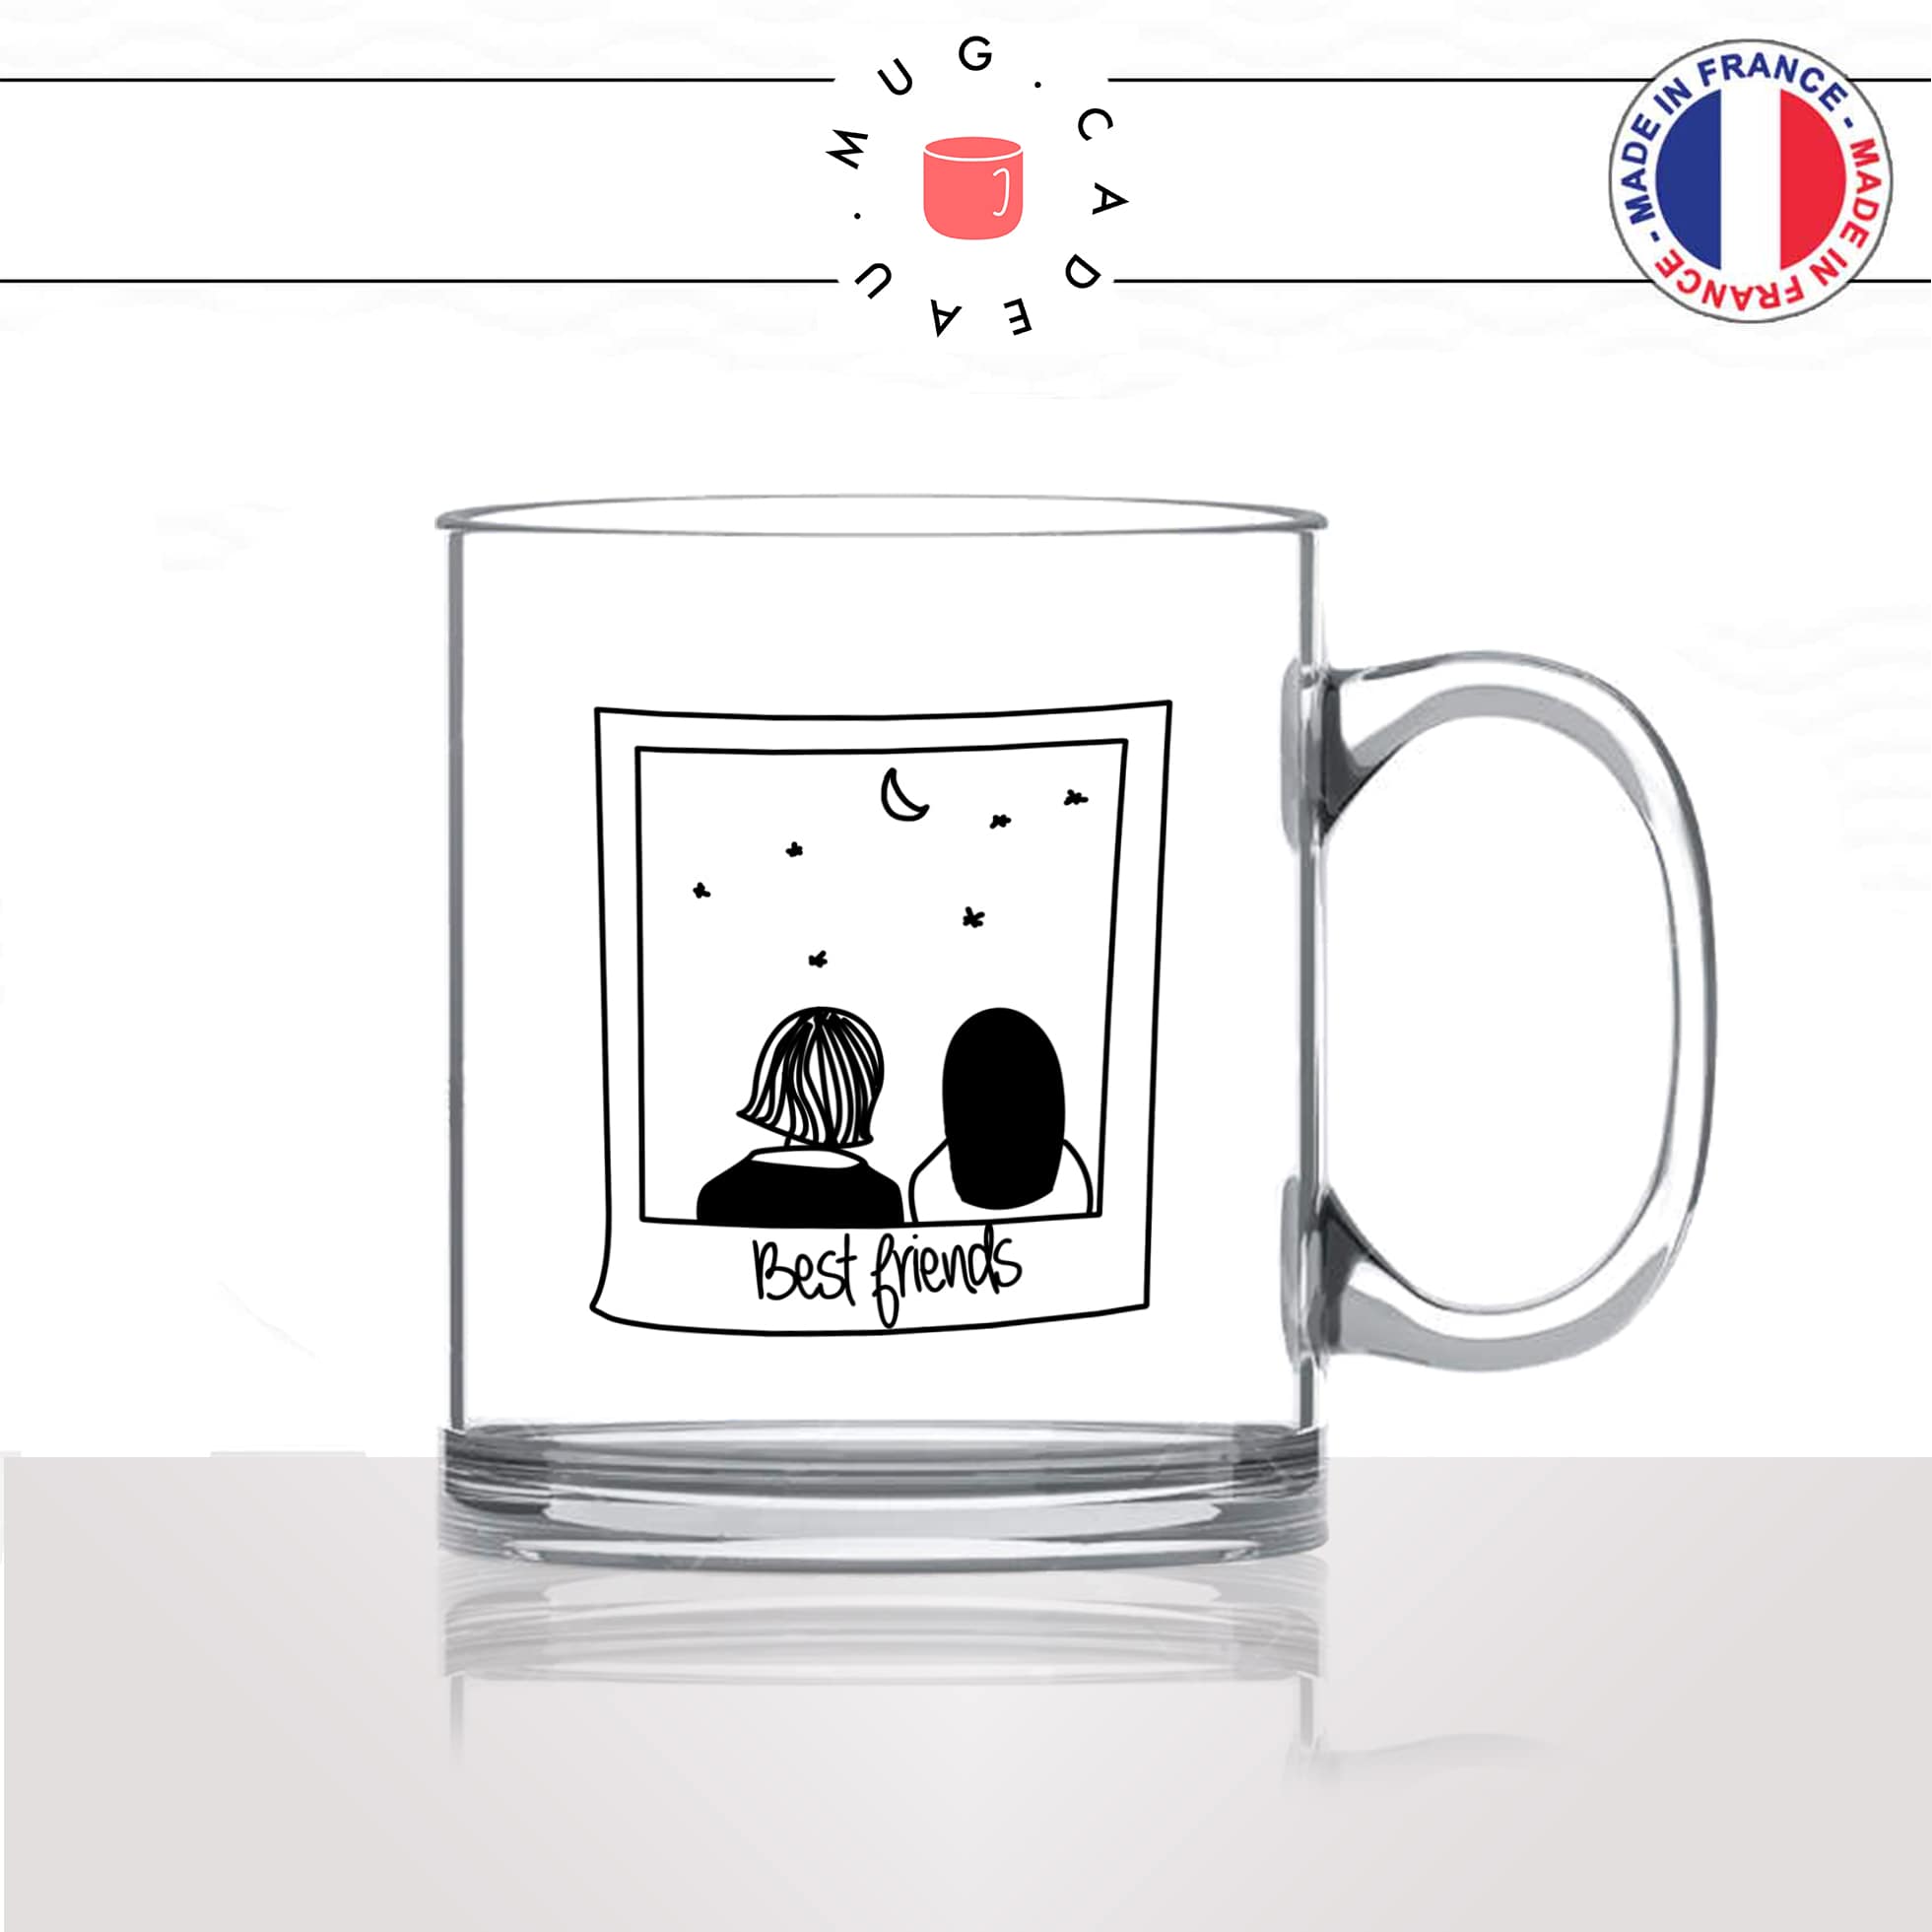 mug-tasse-en-verre-transparent-glass-friend-amitié-photo-best-meilleure-amie-fille-instax-fun-cool-idée-cadeau-original-personnalisé-café-thé2-min